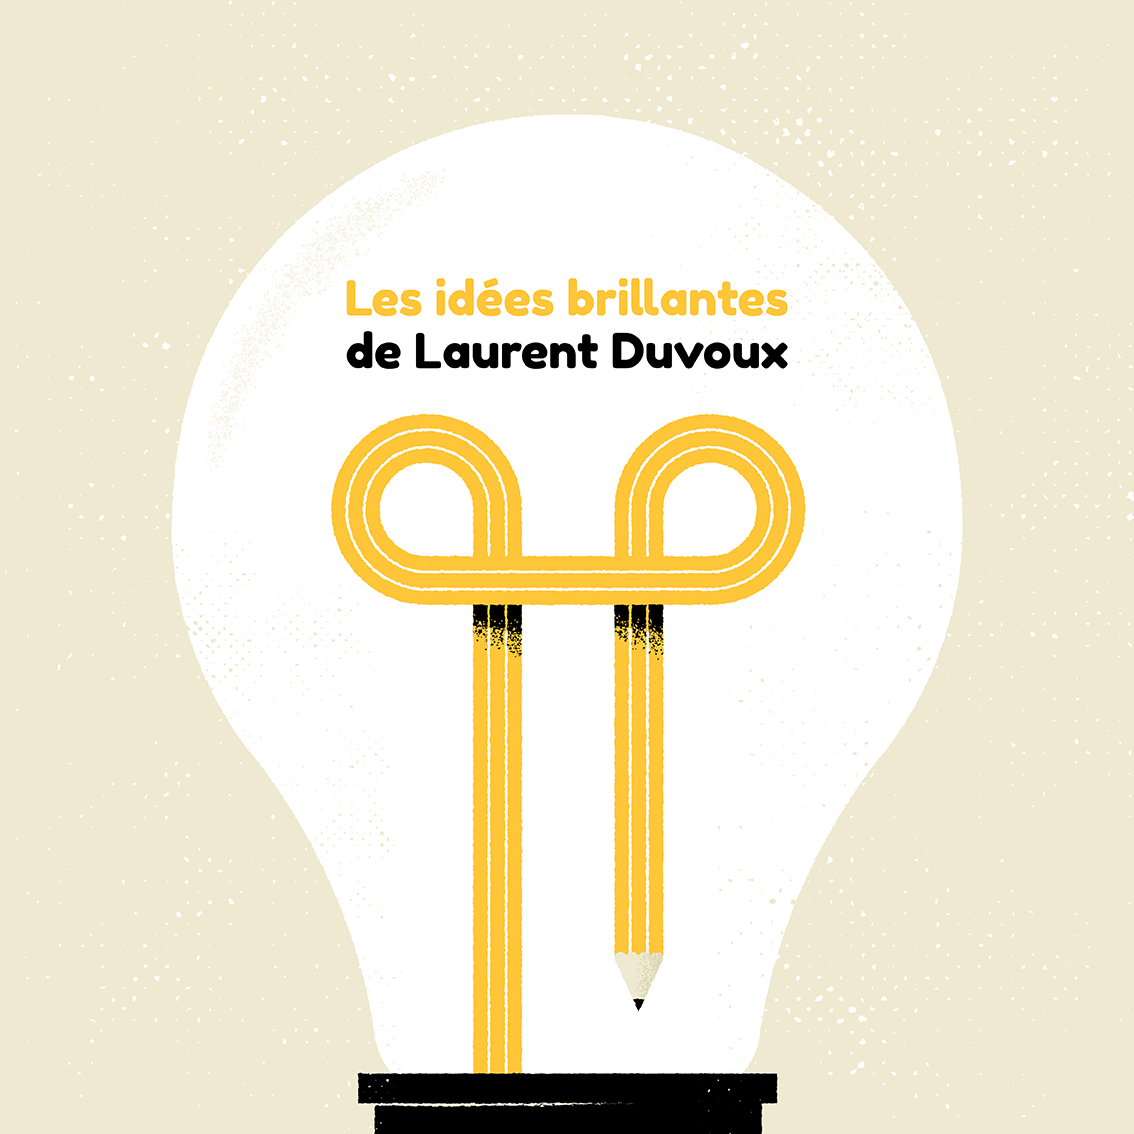 Clod illustration blog L'illustrateur vu de l'intérieur : les idées brillantes de Laurent Duvoux